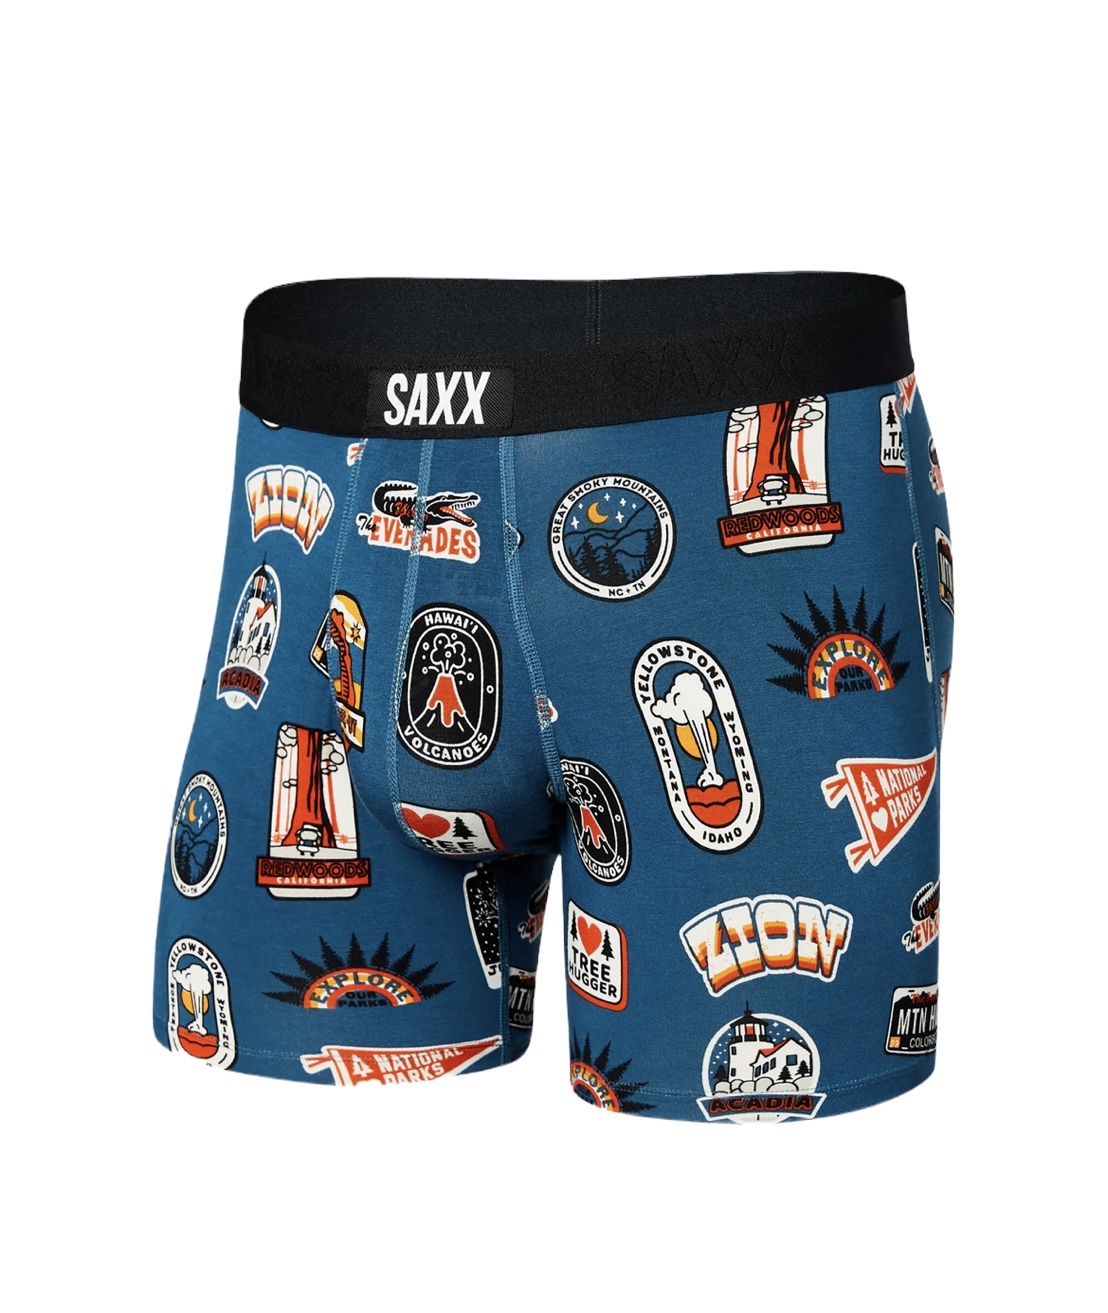 Saxx Men's Underwear– Ultra Super Soft Briefs for Men with Built